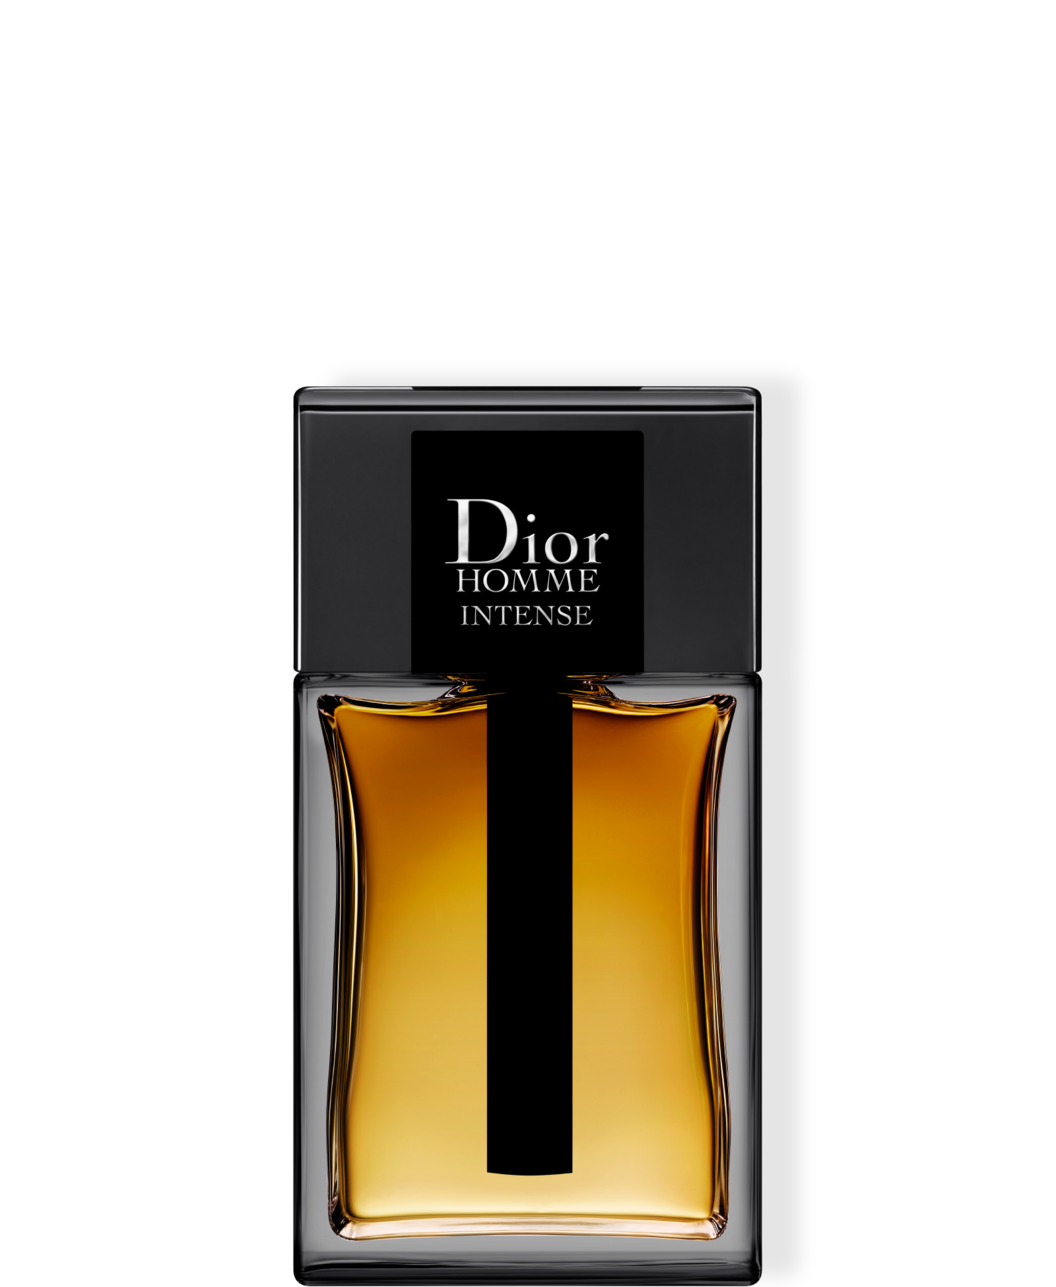 Dior Homme Intense EdP 100 ml för 1460 kr på Kicks